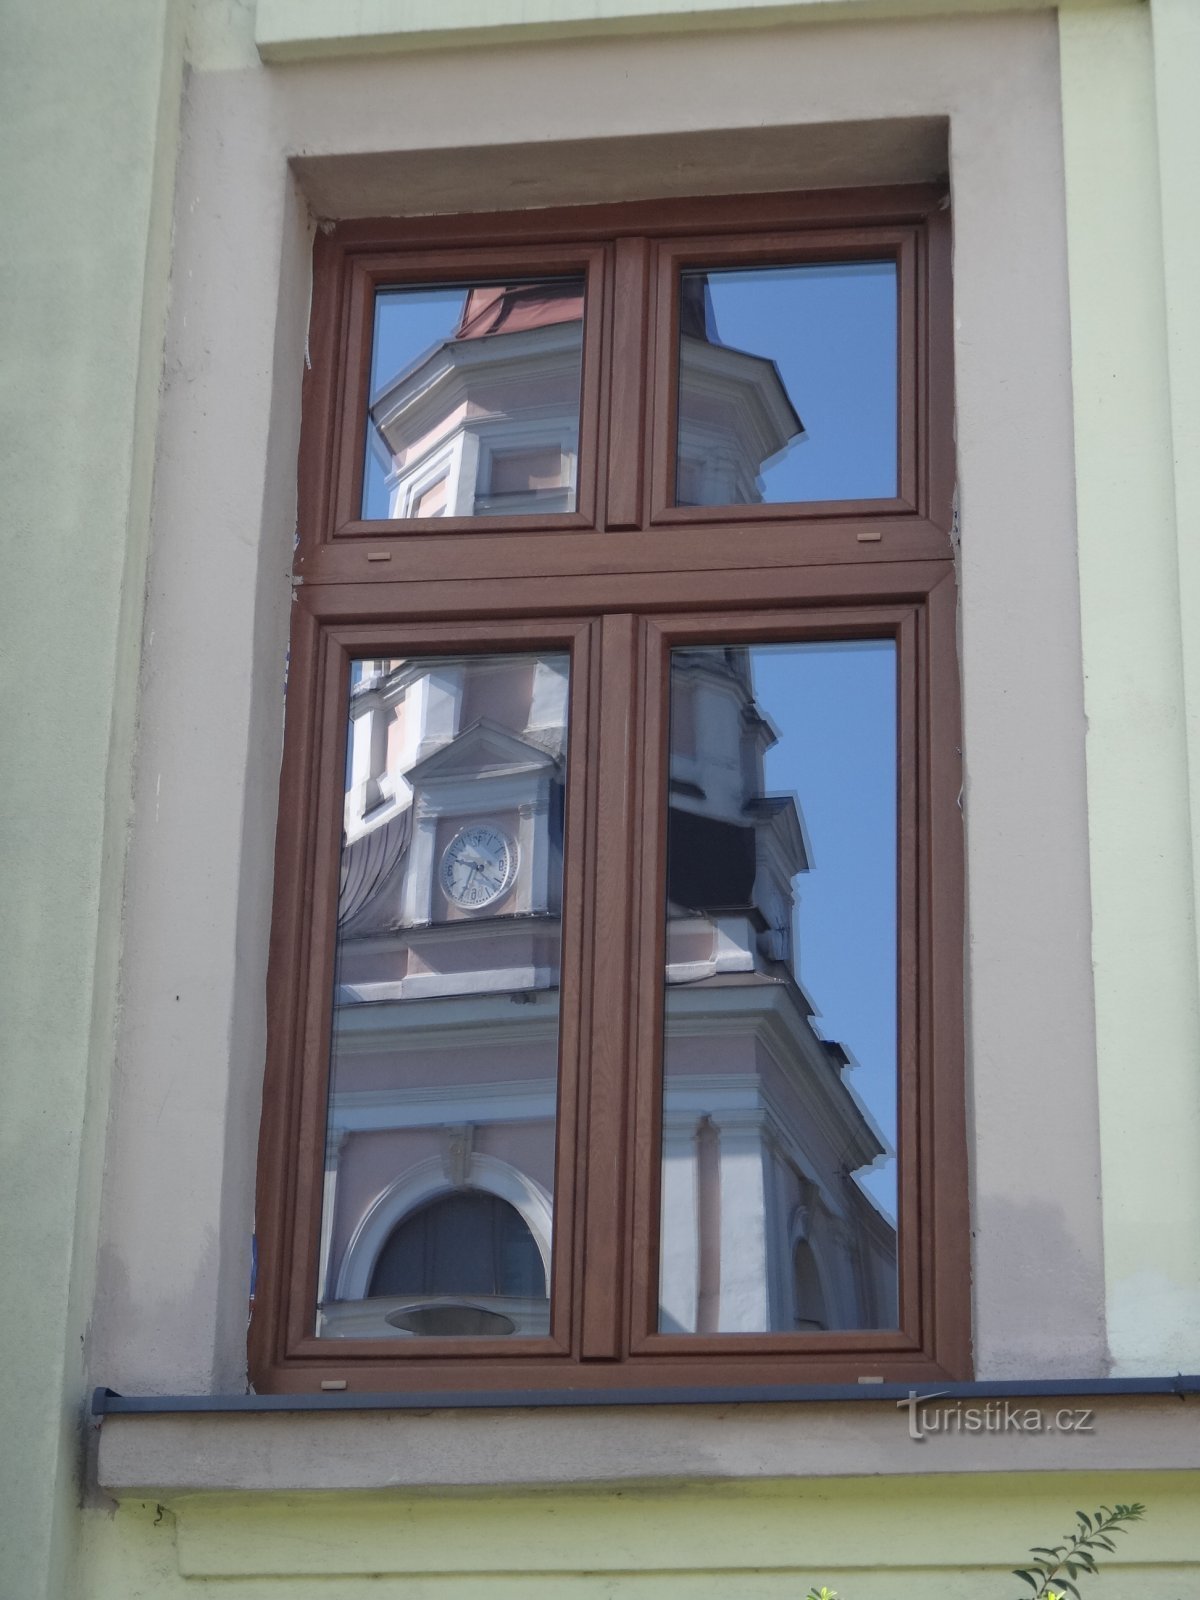 reflectarea bisericii în ferestrele primăriei